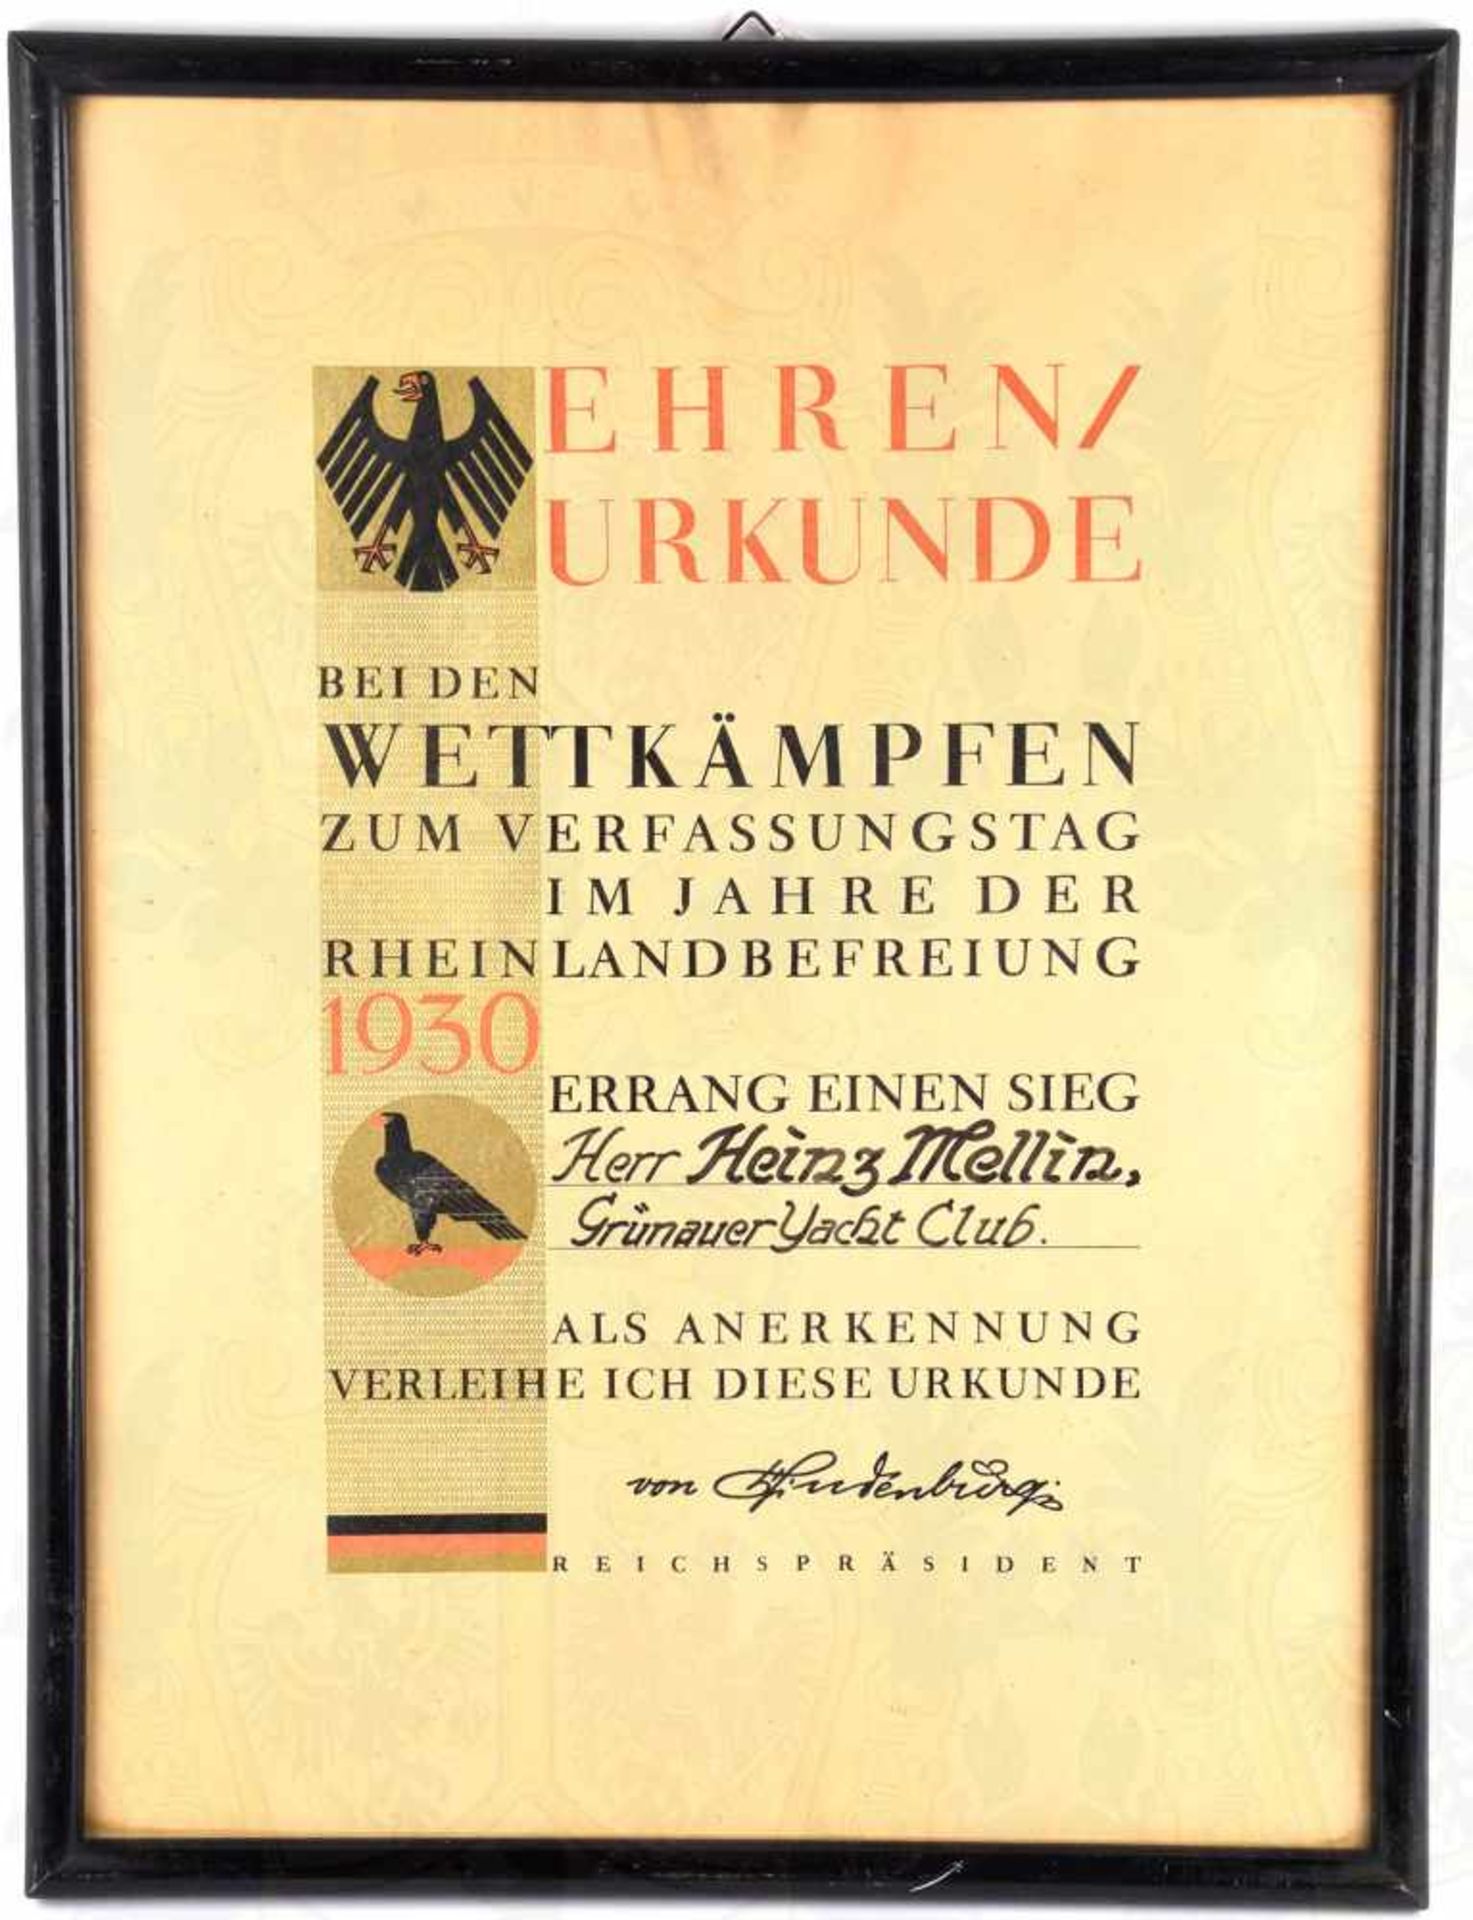 EHRENURKUNDE WETTKÄMPFE ZUM VERFASSUNGSTAG 1930, für einen Segler des Grünauer Yacht-Clubs (Berlin),